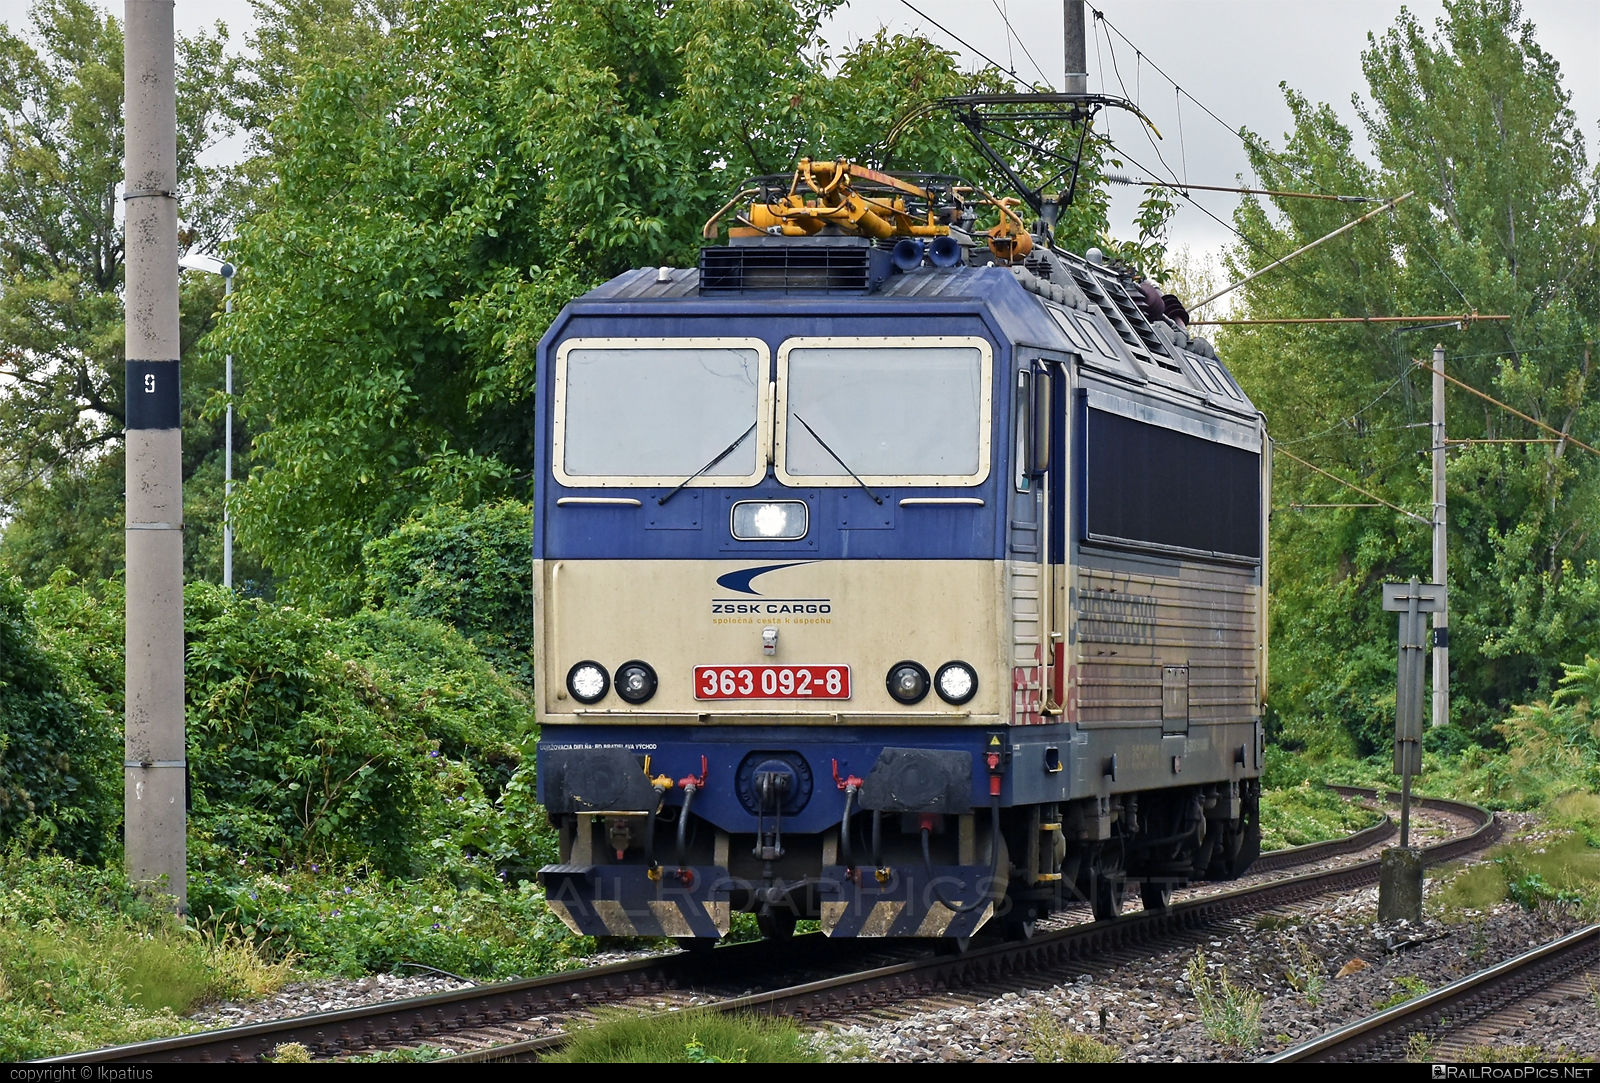 Škoda 69E - 363 092-8 operated by Železničná Spoločnost' Cargo Slovakia a.s. #ZeleznicnaSpolocnostCargoSlovakia #es4991 #eso #locomotive363 #skoda #skoda69e #zsskcargo